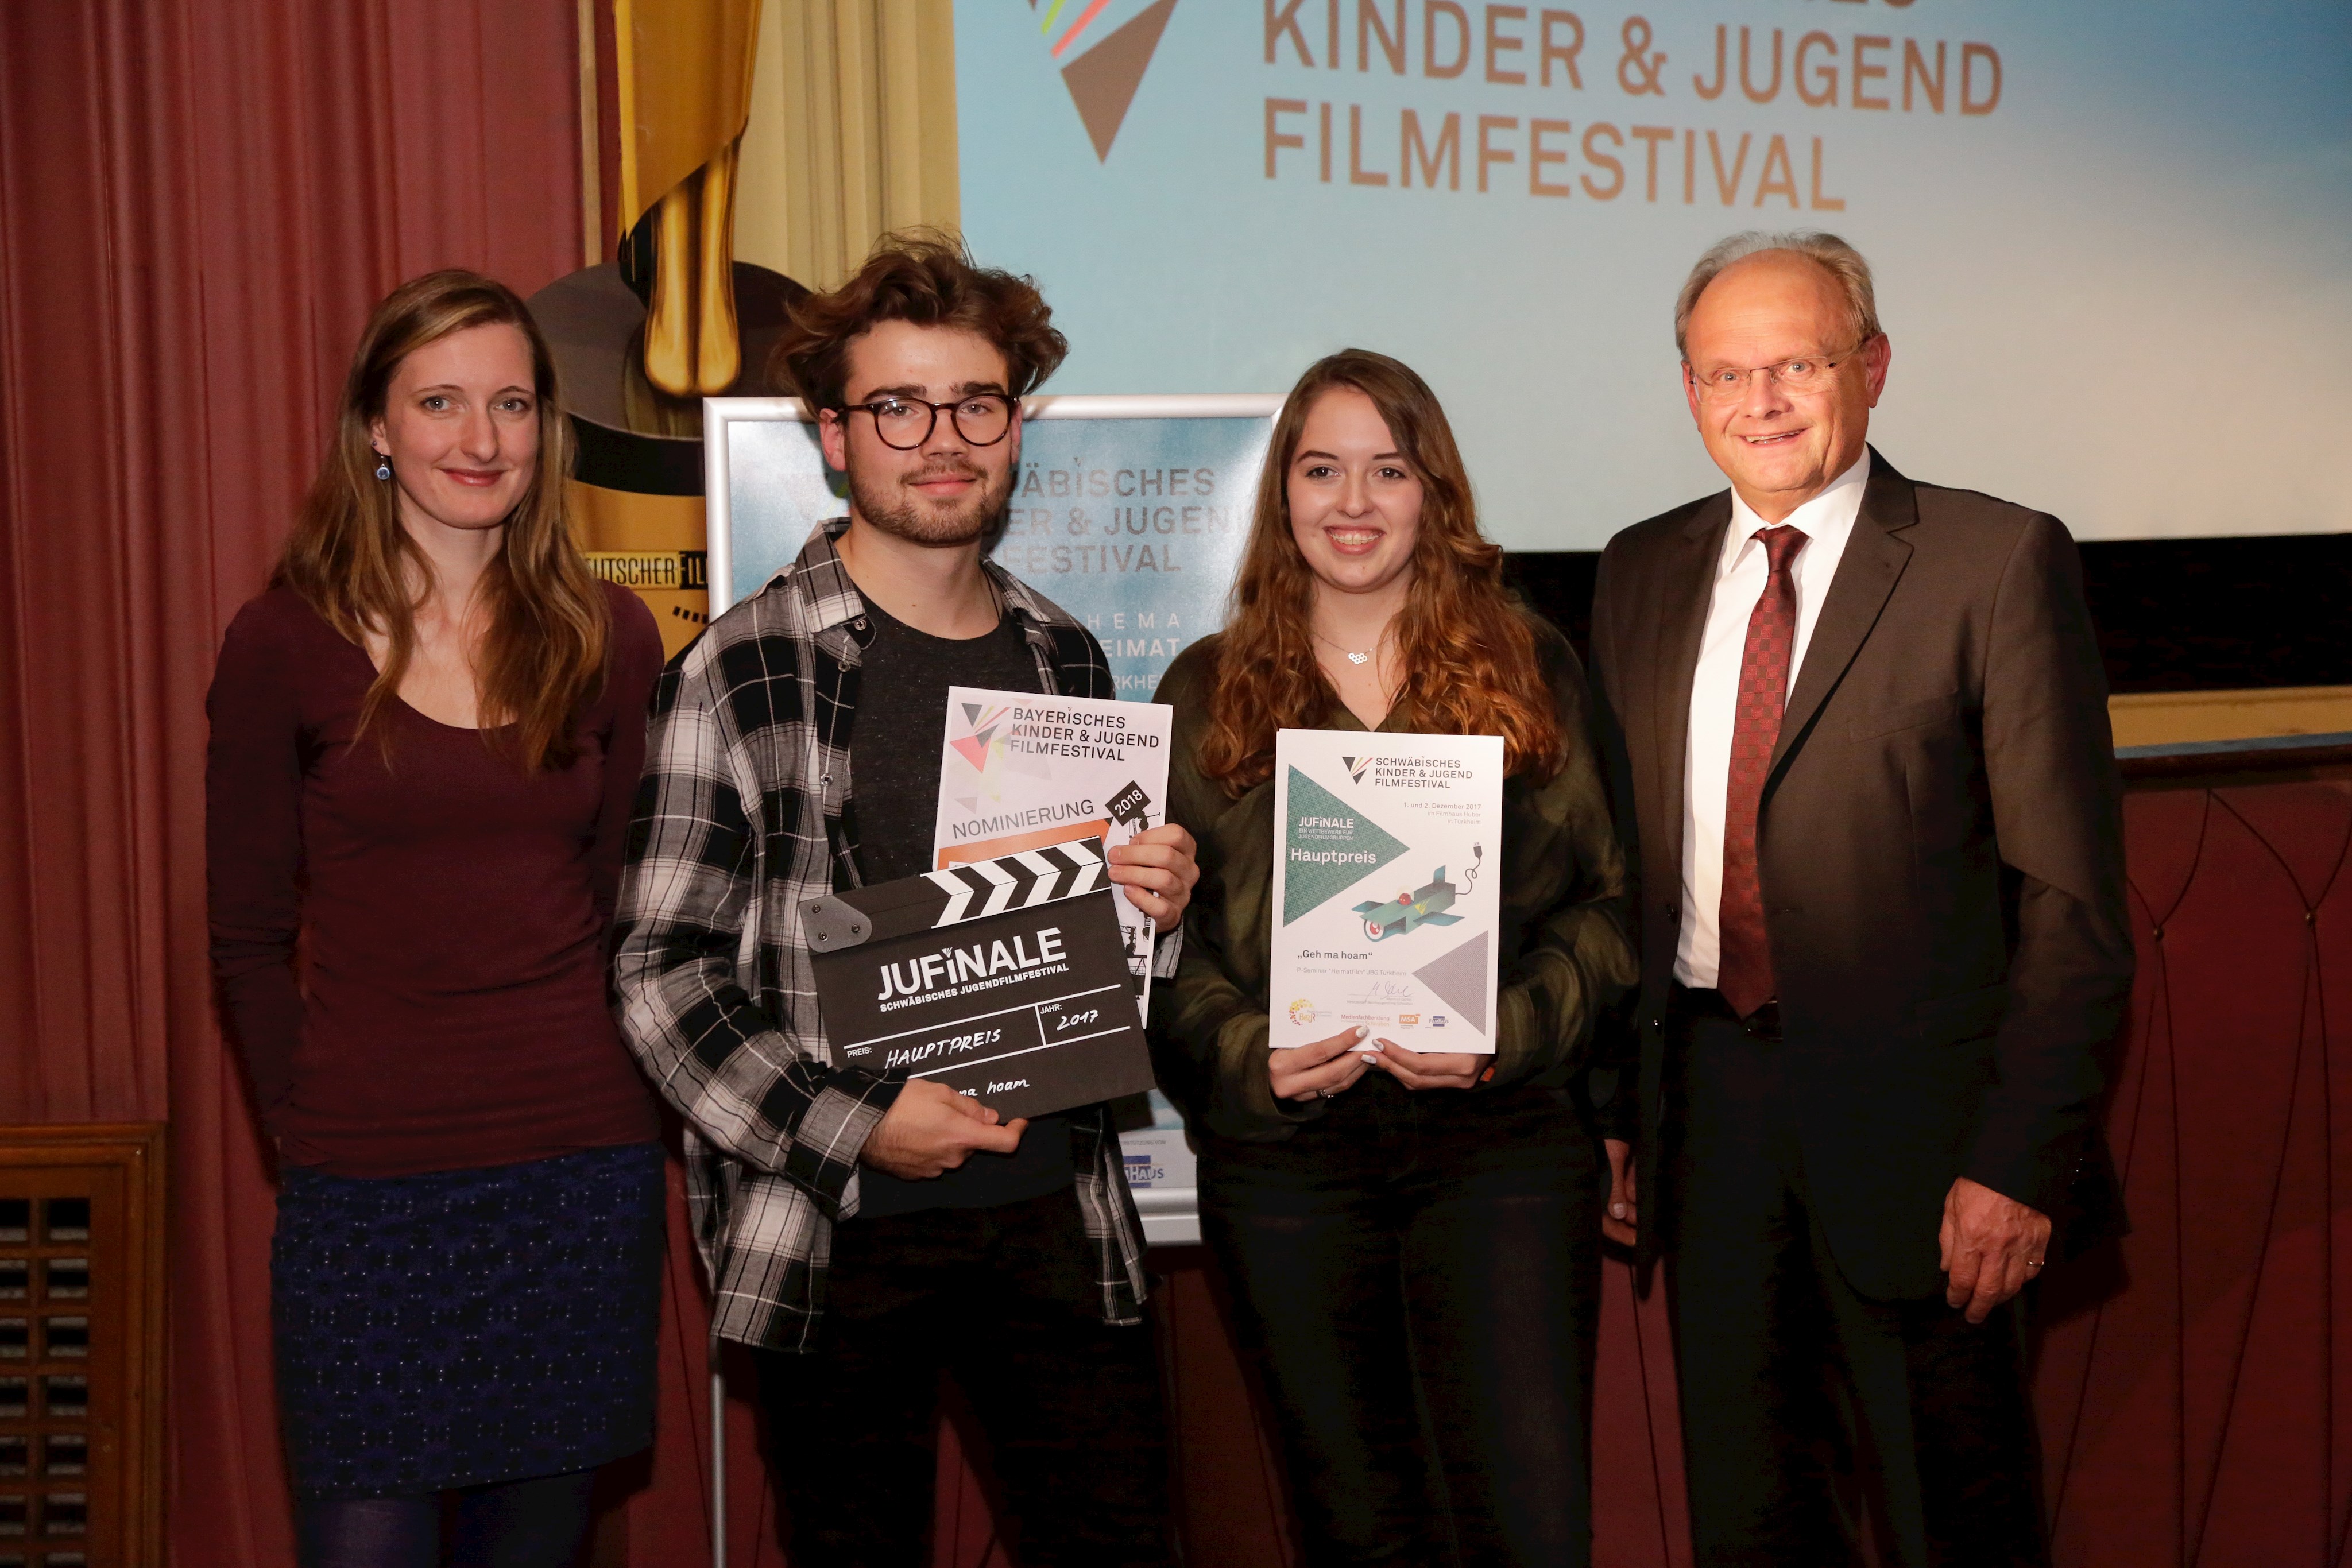 Gruppenbild vor der Kinoleinwand; die Preisträger halten Urkunden und den Preis (eine Filmklappe) in den Händen